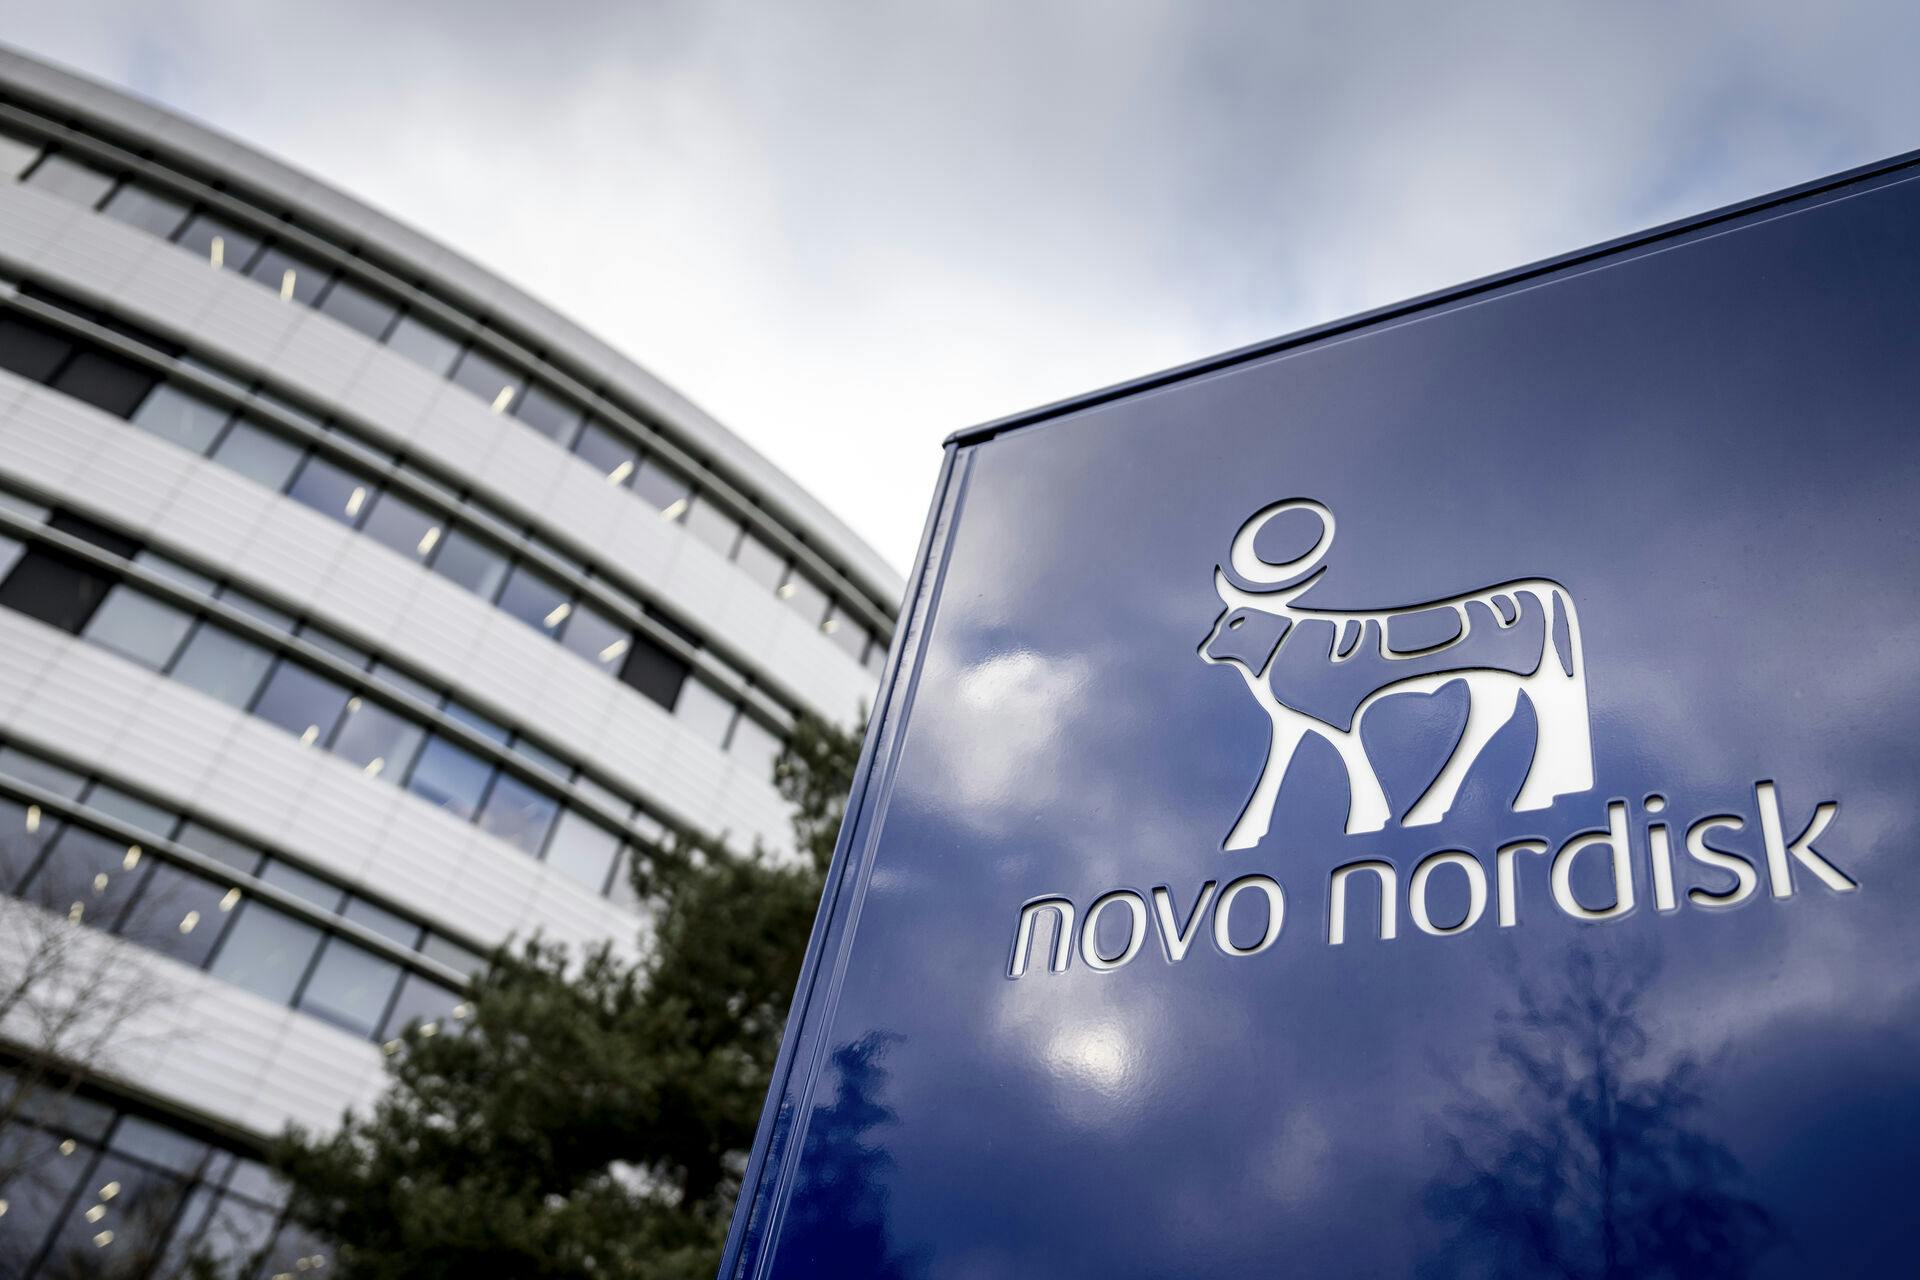 Tidligere mandag kom det også frem, at Novo uddeler bonusser til en del af virksomhedens 60.000 ansatte, som konsekvens af virksomhedens milliardoverskud.